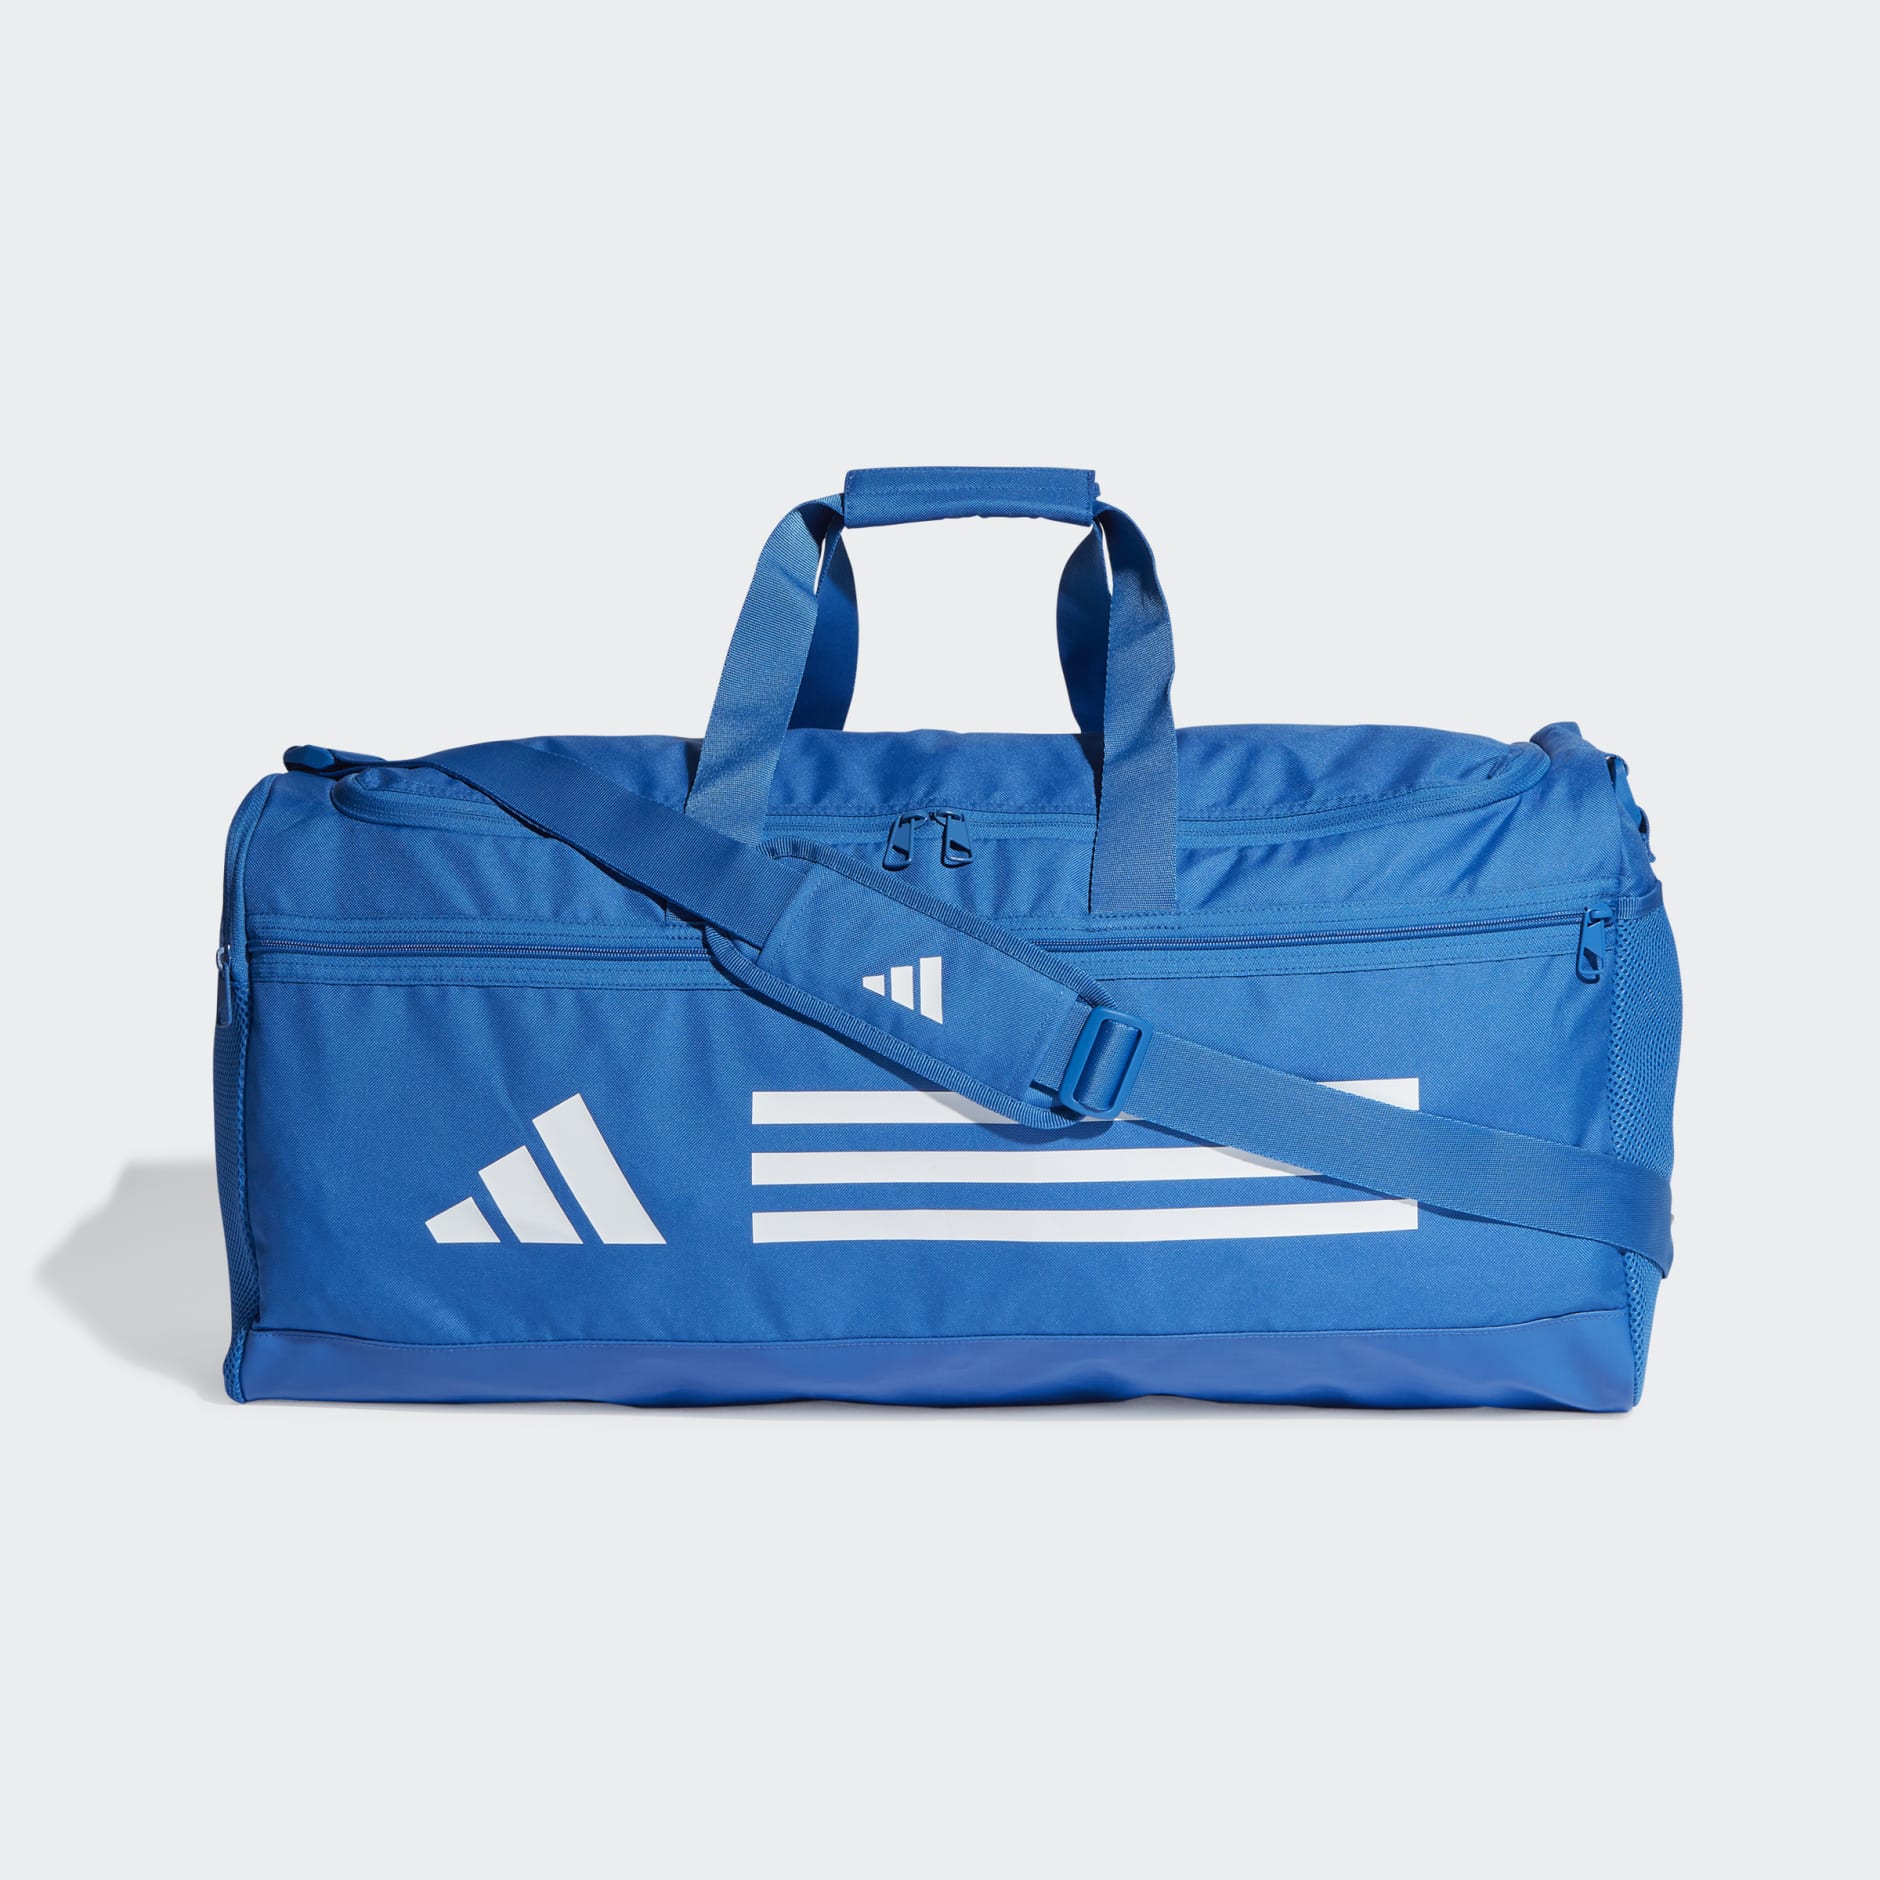 All products - Essentials Training Duffel Bag Medium - Blue | adidas ...